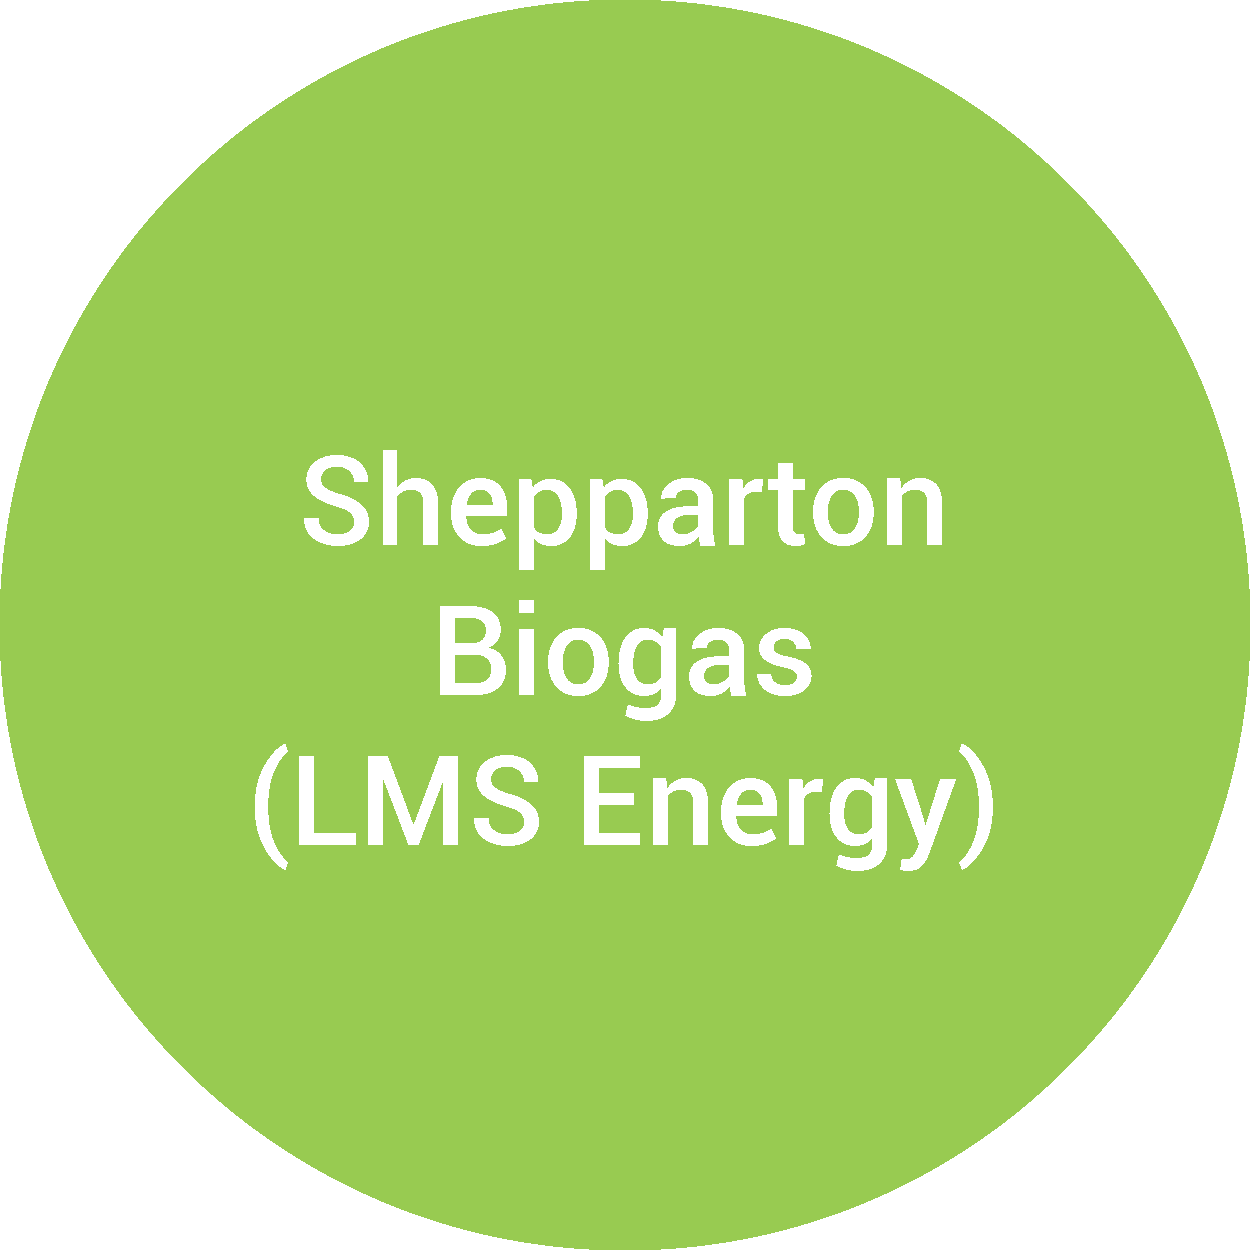 Shepparton Biogas (LMS Energy)